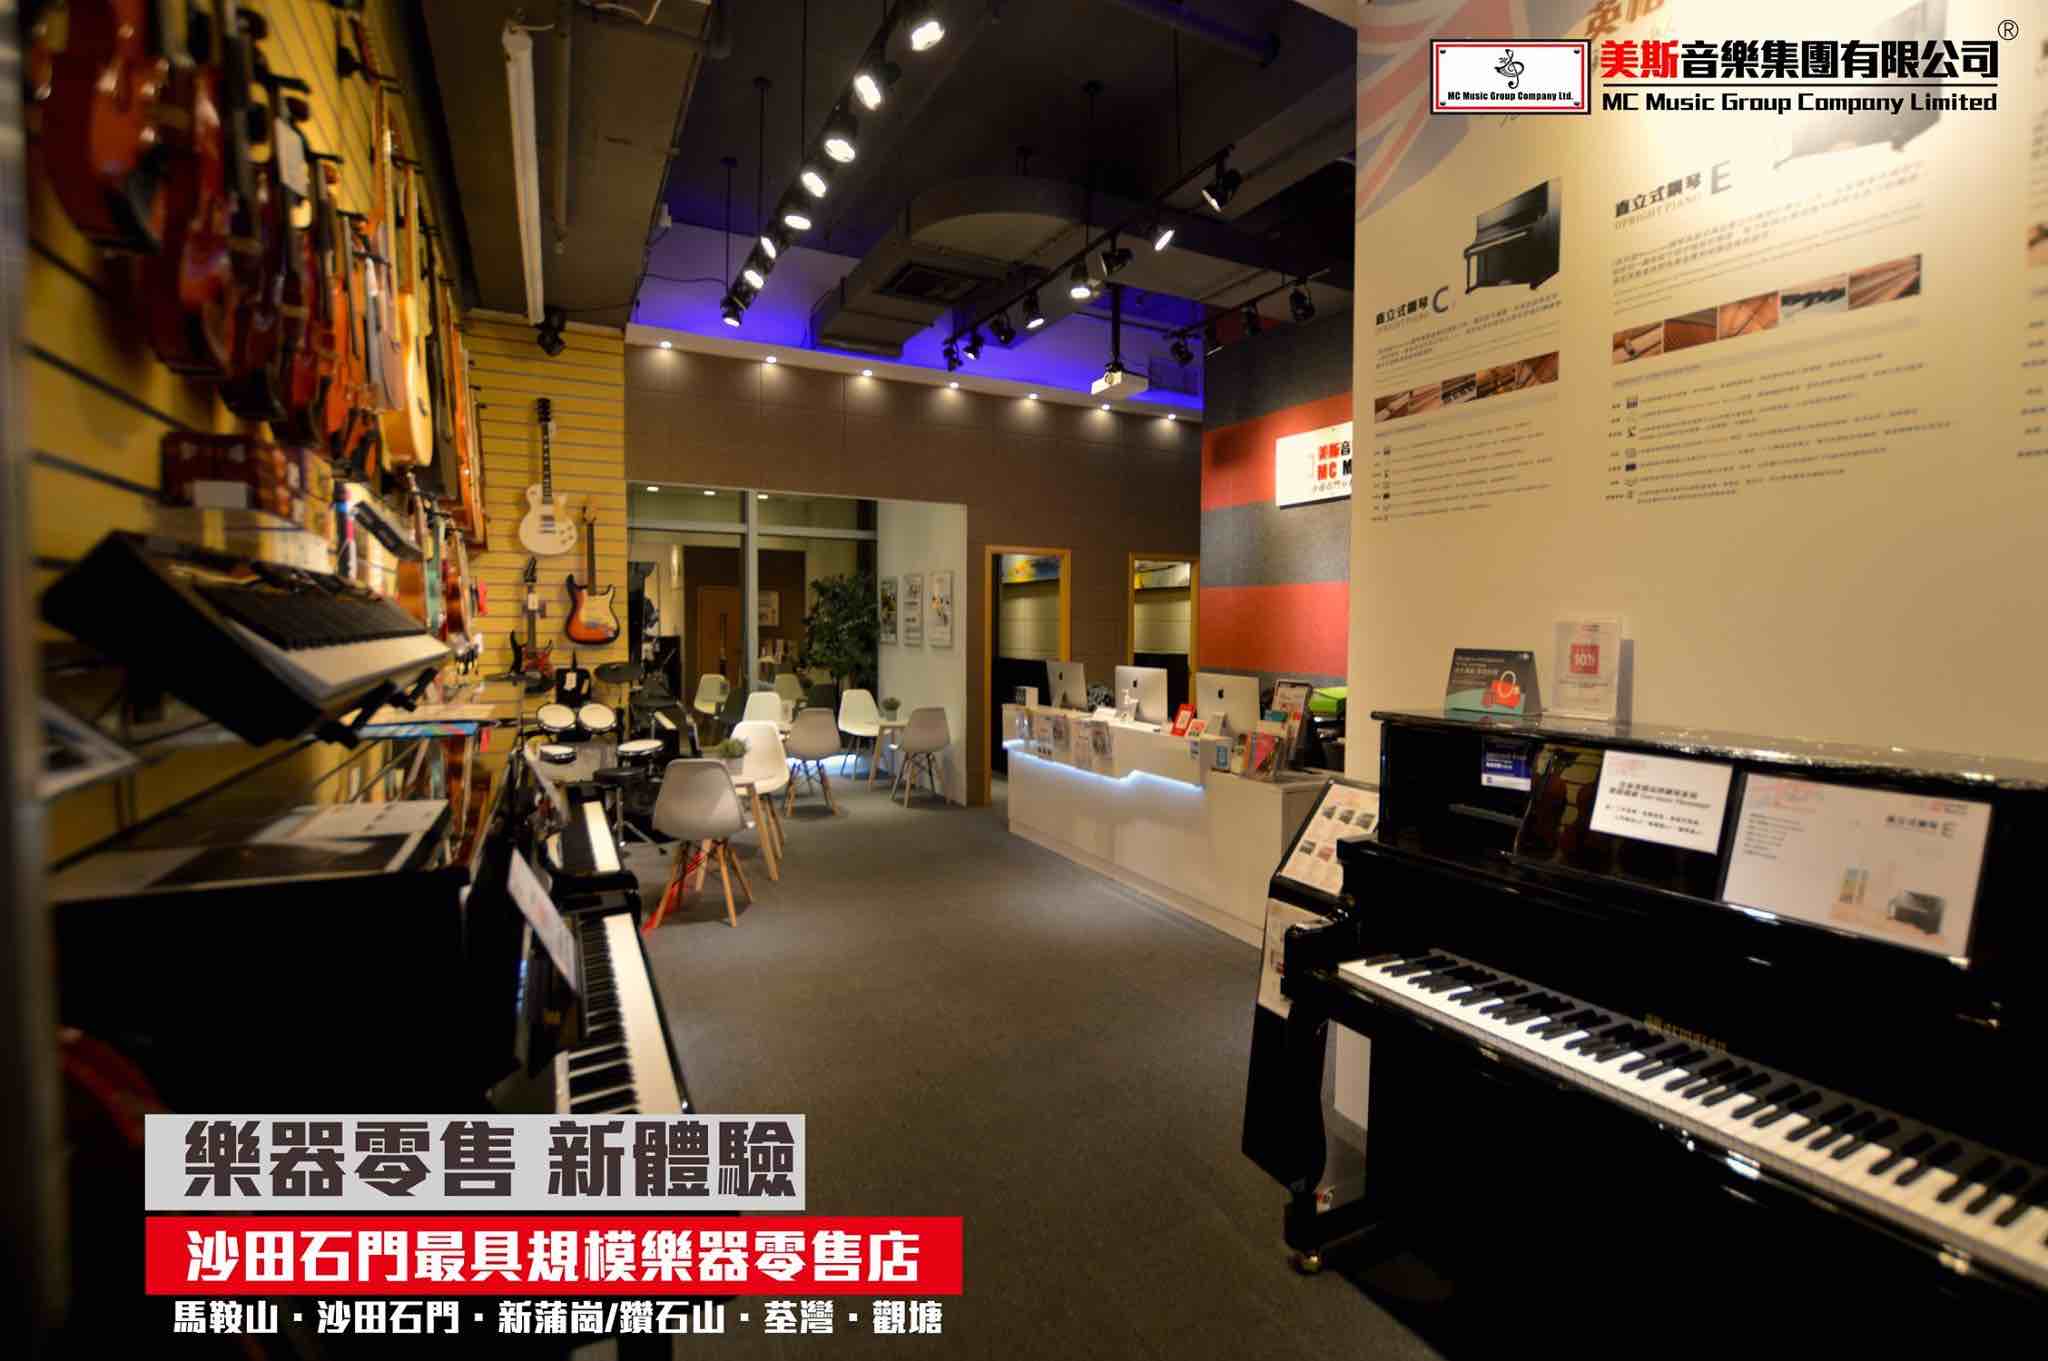 美斯音樂學院MC Music的特許經營香港區加盟店項目3